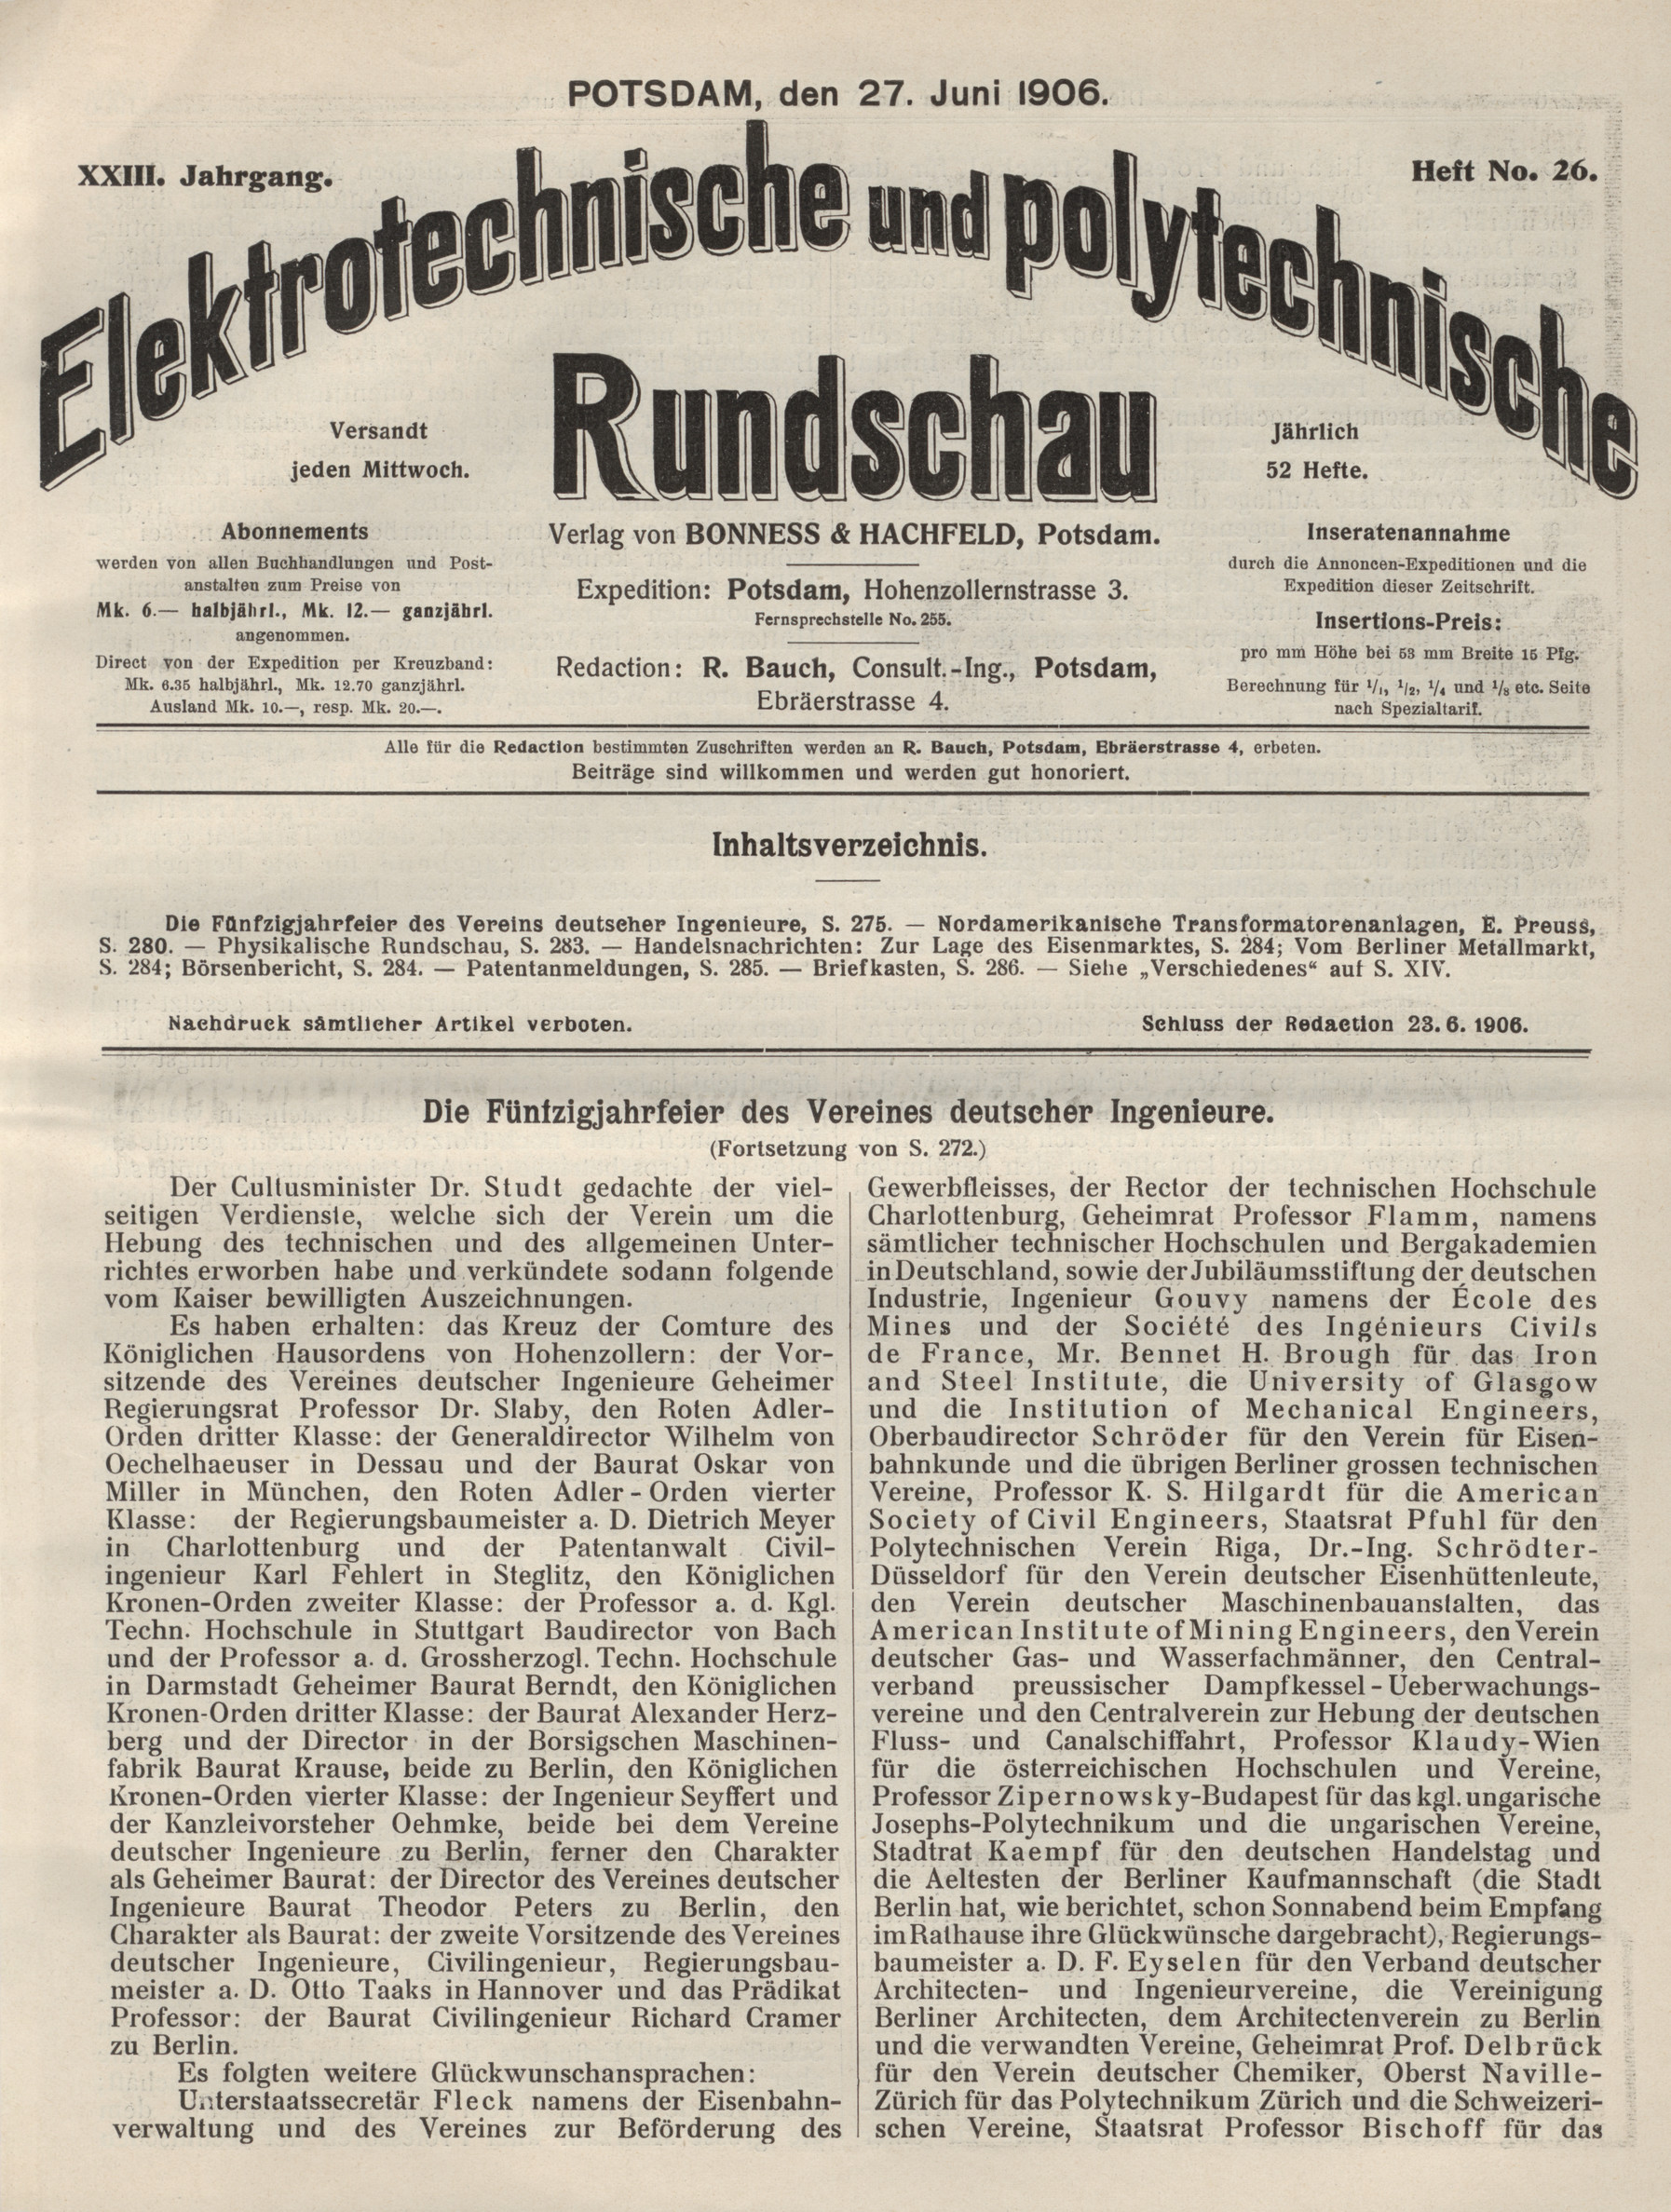 Elektrotechnische und polytechnische Rundschau, XXIII. Jahrgang, Heft No. 26